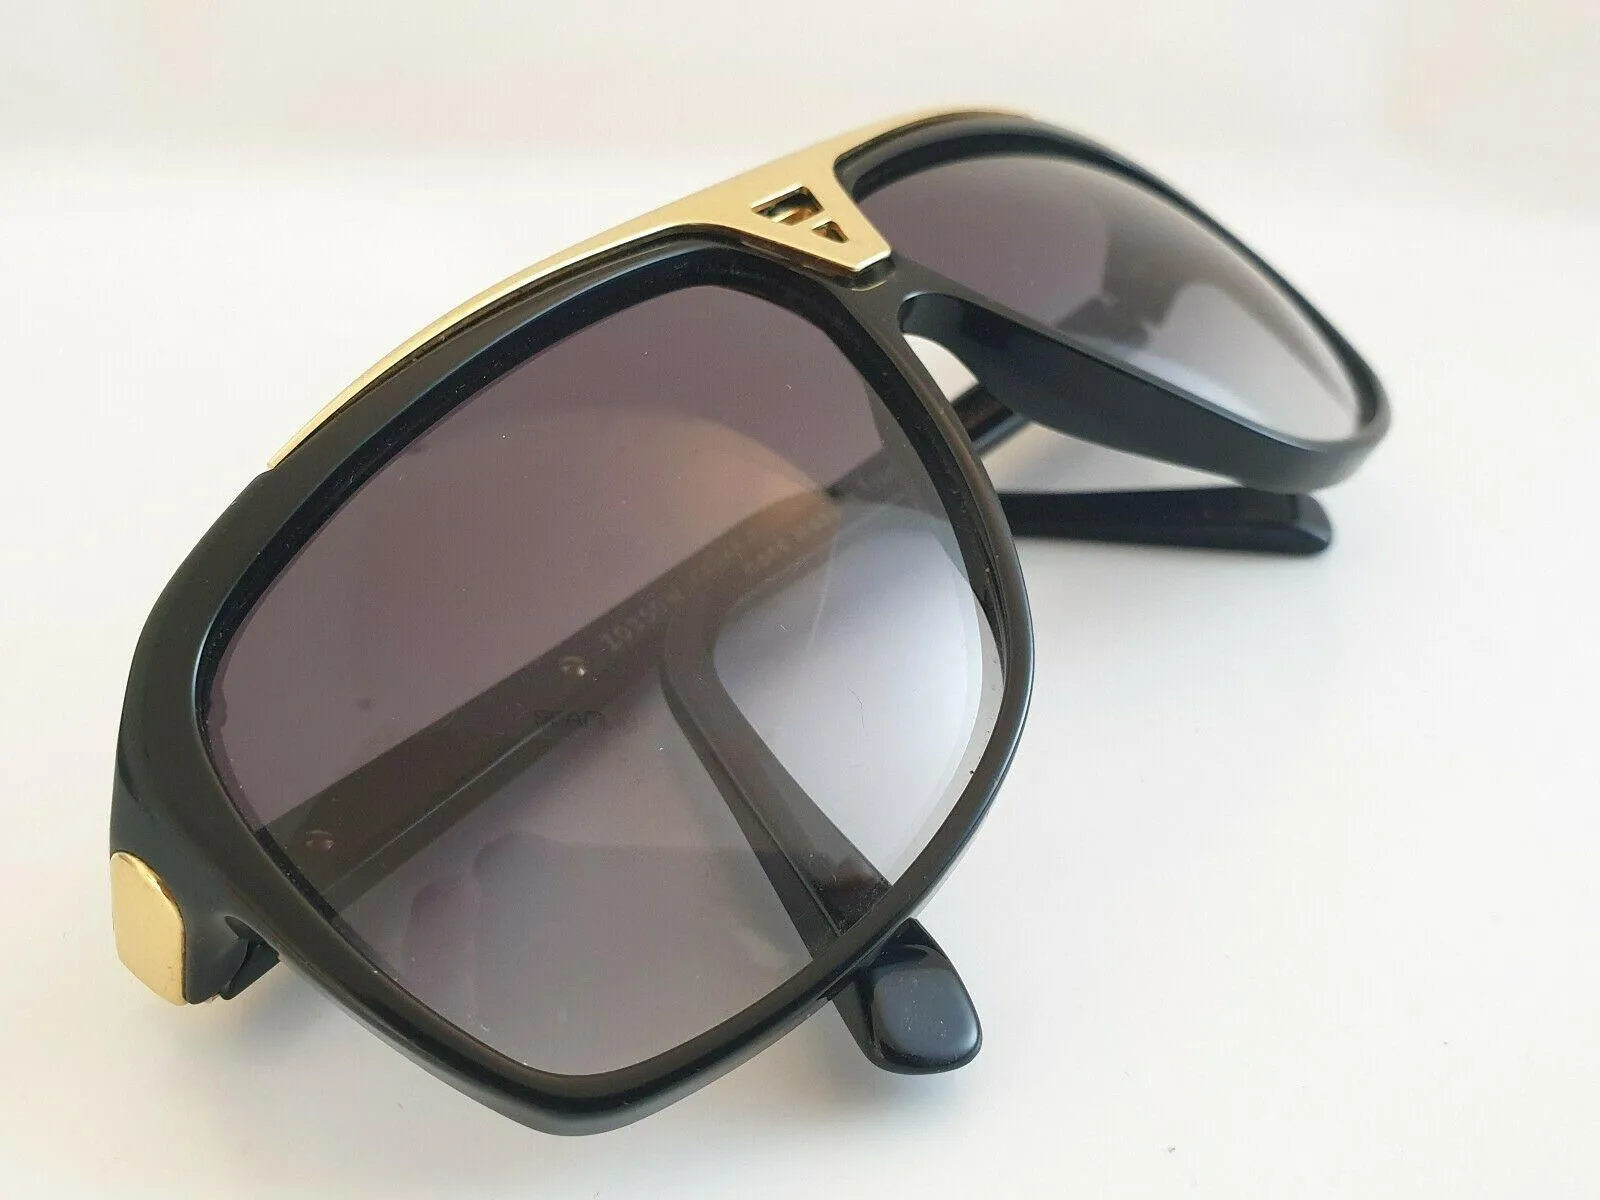 Модные роскошные новые солнцезащитные очки бренда Evidence для женщин, ретро, винтажные, мужские, дизайнерские, в блестящей золотой оправе, с лазерным логотипом, качество с коробкой304r